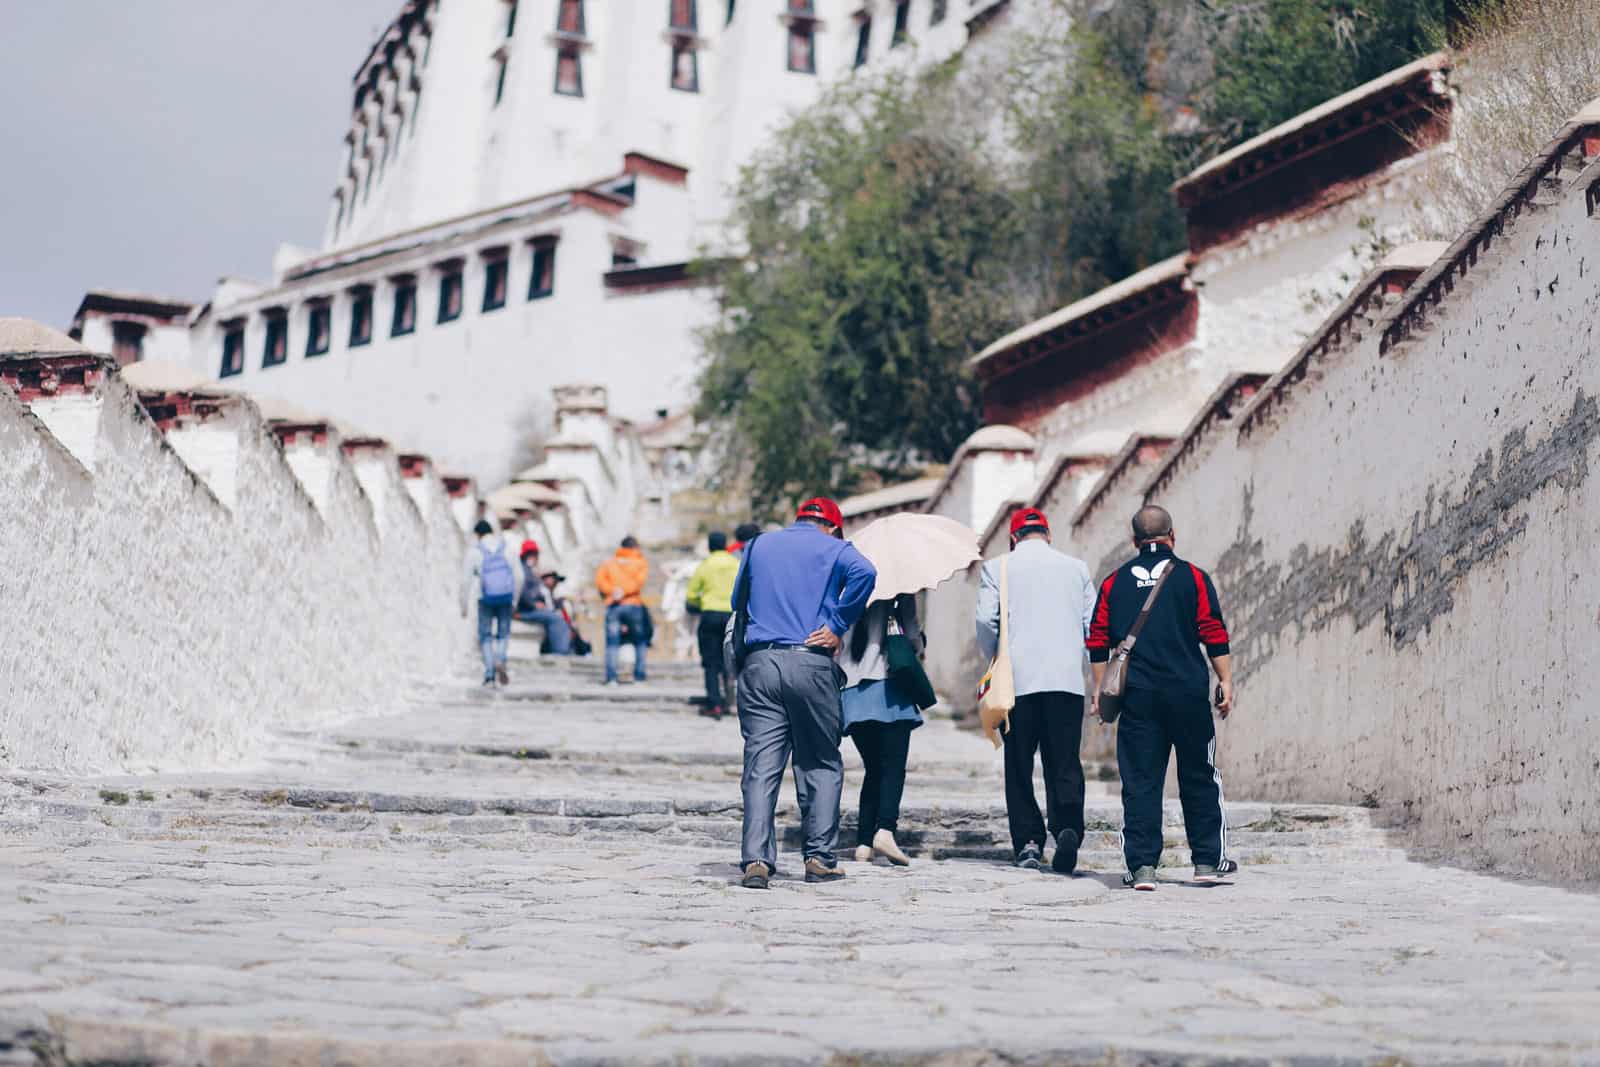 布达拉宫，早已失去政教合一的意义，对许多前来拉萨的游客来说，那是一个非去不可的指标，也是一个可以了解西藏前世今生的历史博物馆。